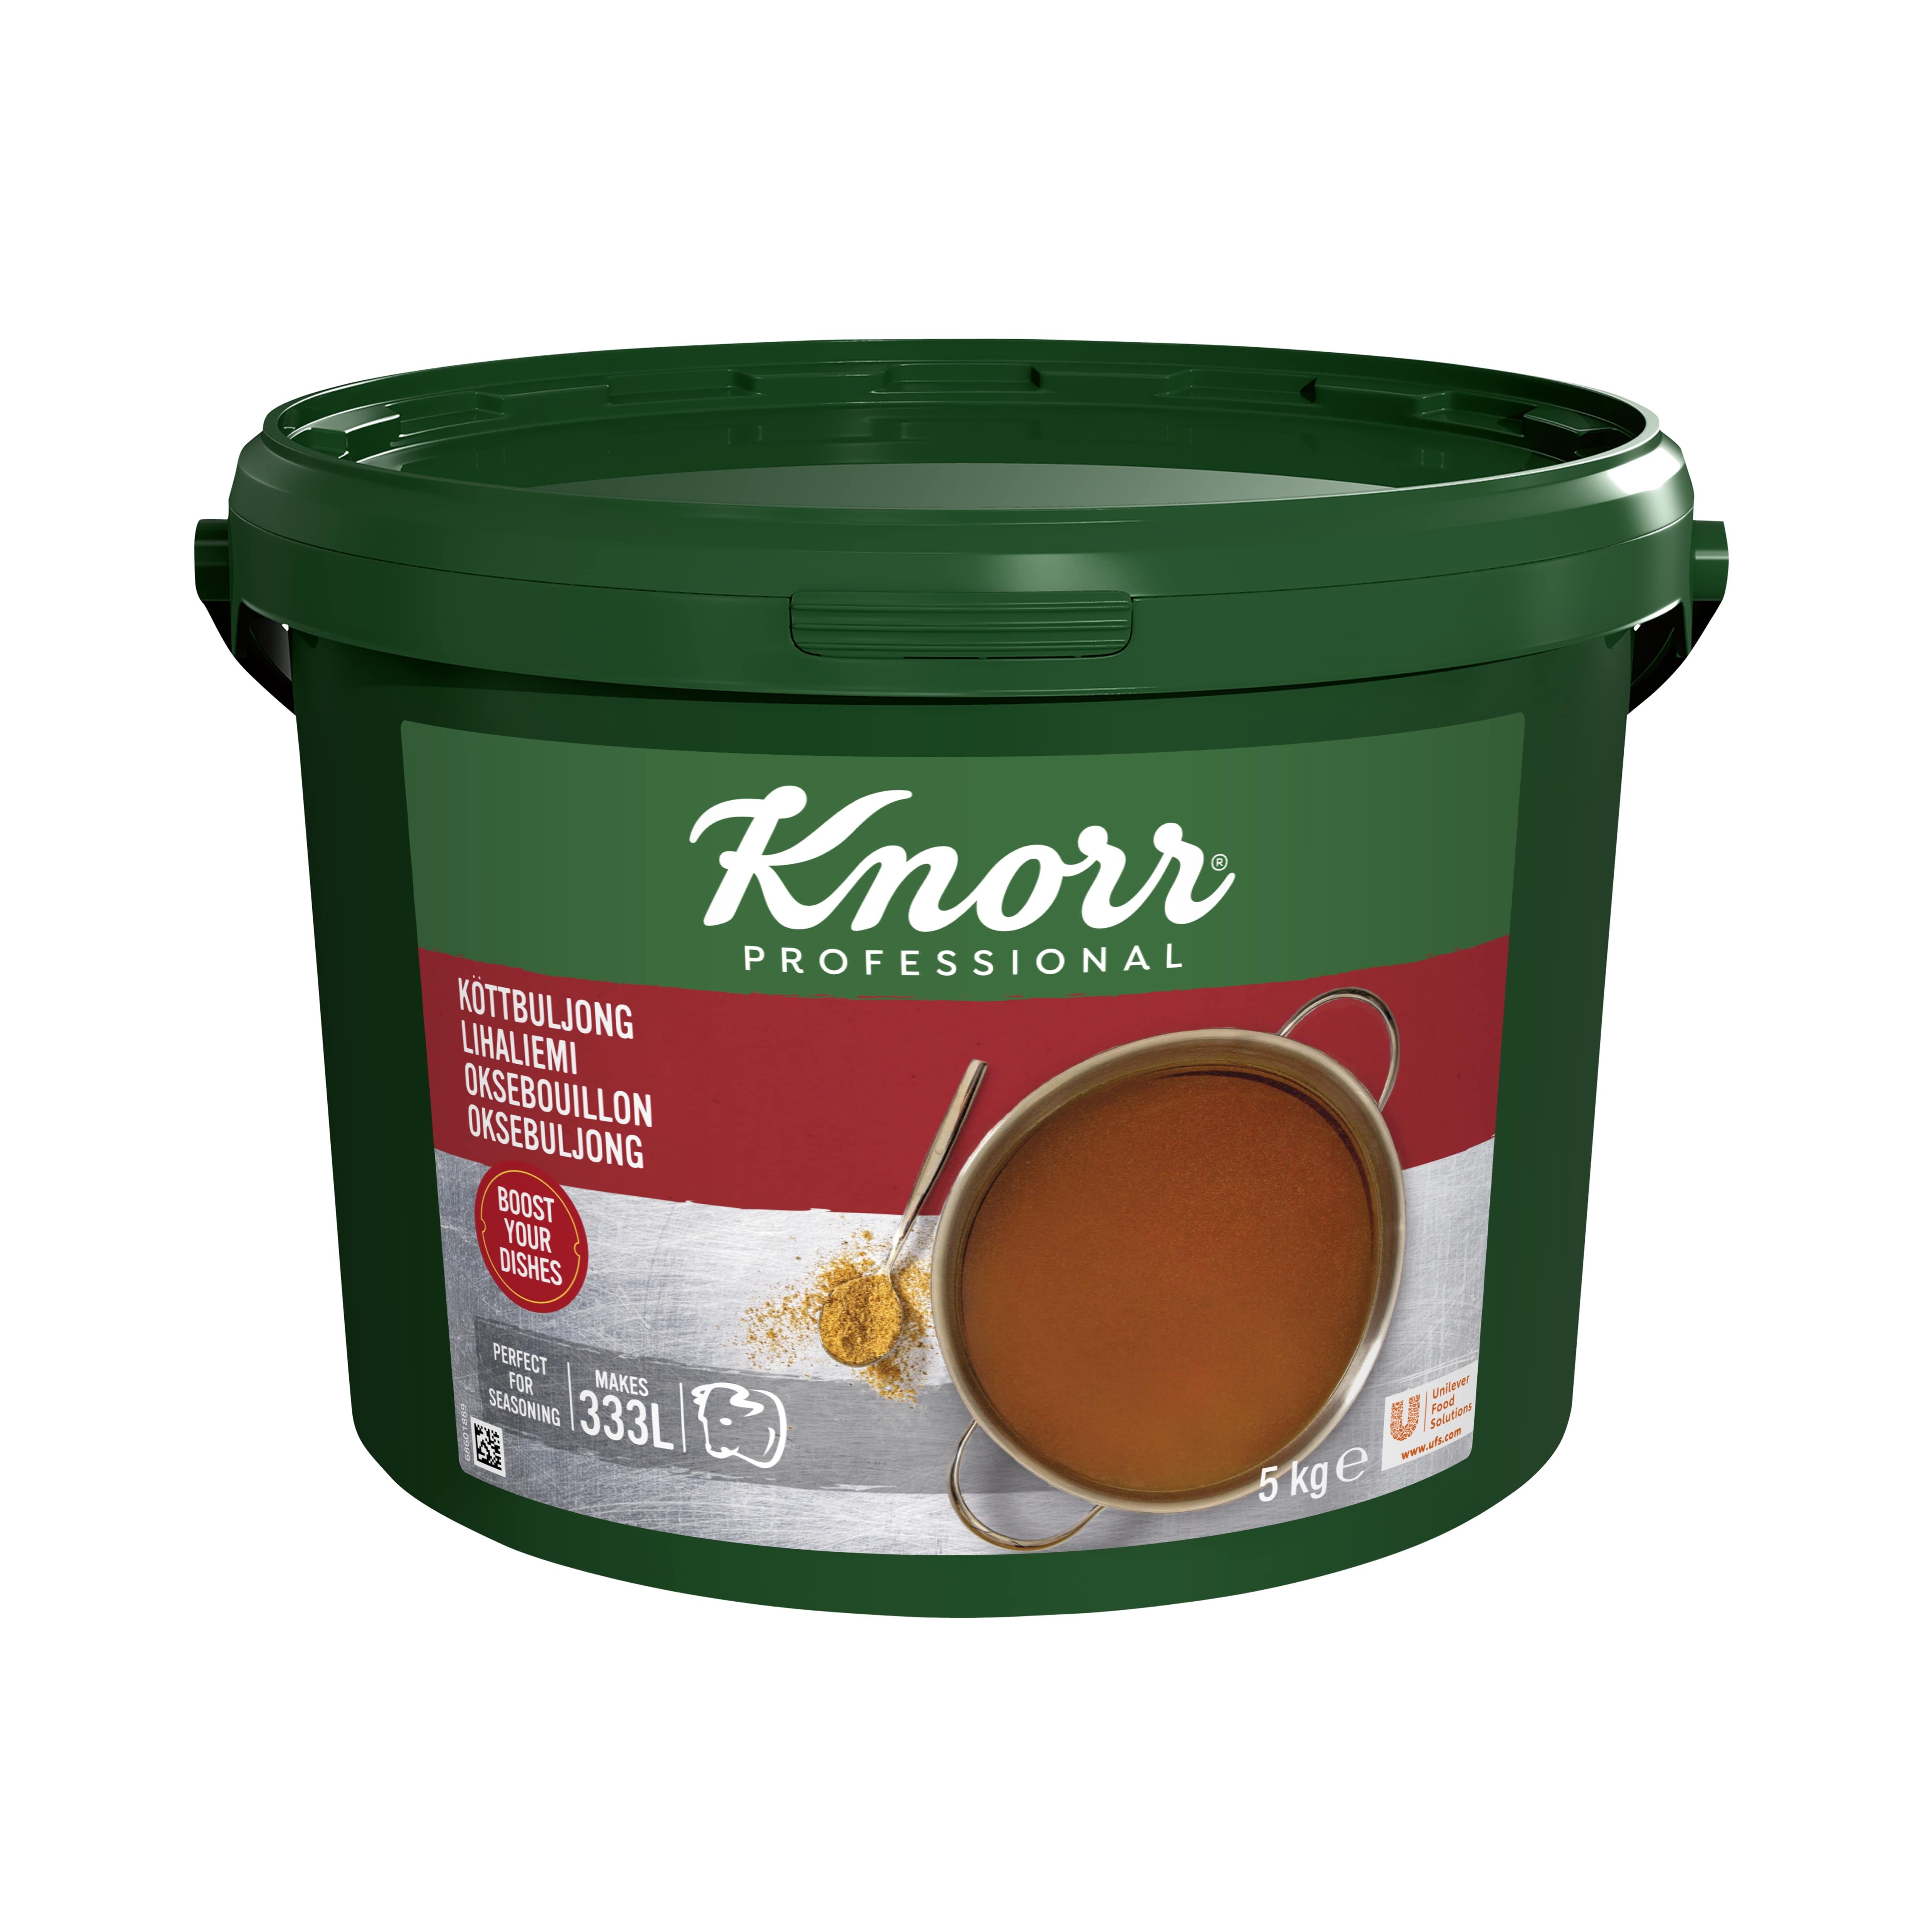 Knorr Lihaliemi 5 kg / 333 L